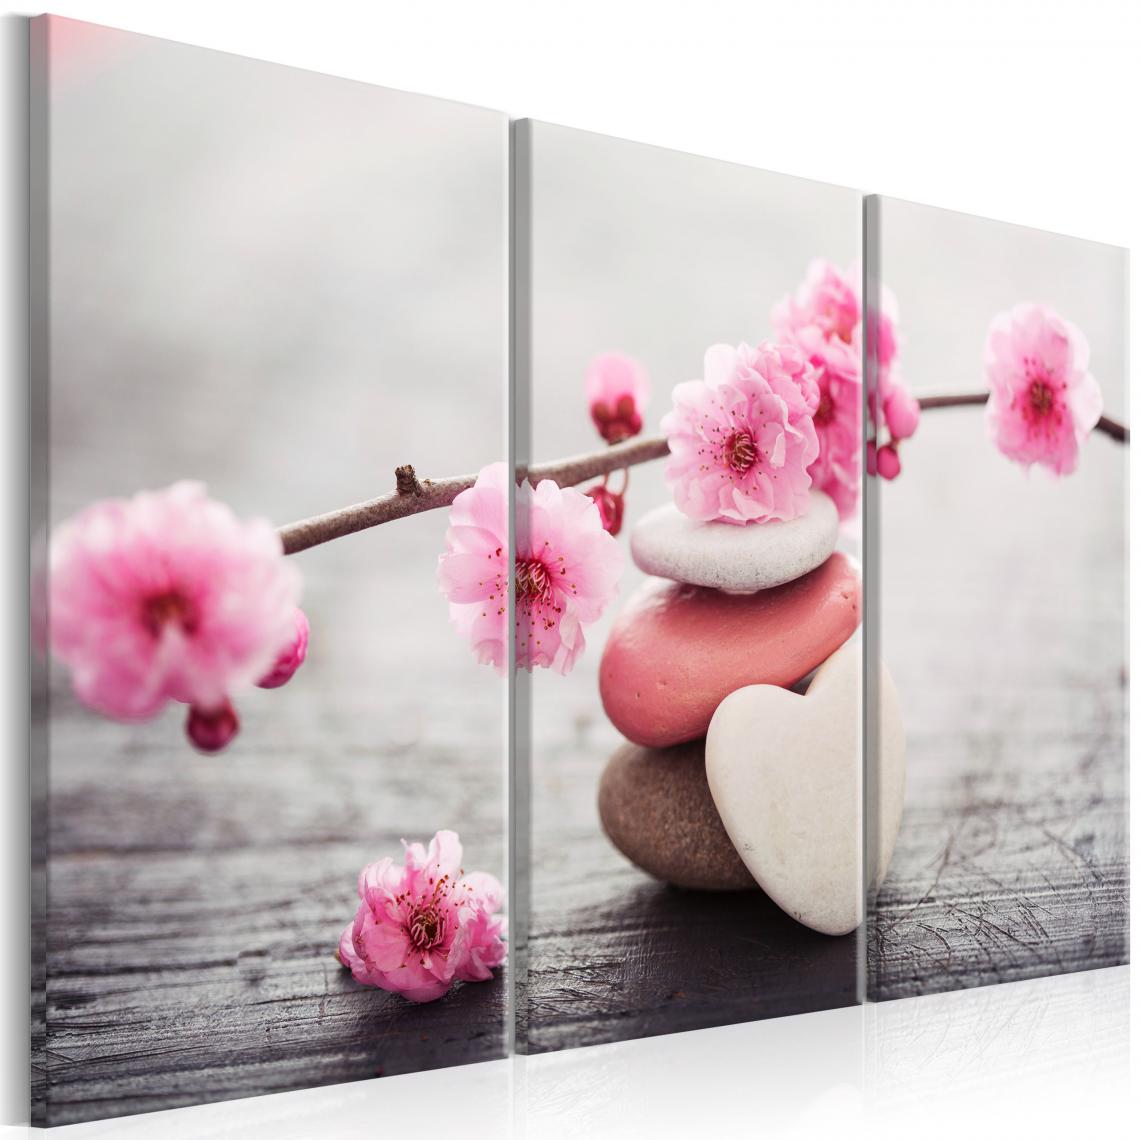 Decoshop26 - Tableau sur toile en 3 panneaux décoration murale image imprimée cadre en bois à suspendre Zen : Fleurs de cerisier II 120x80 cm 11_0009133 - Tableaux, peintures